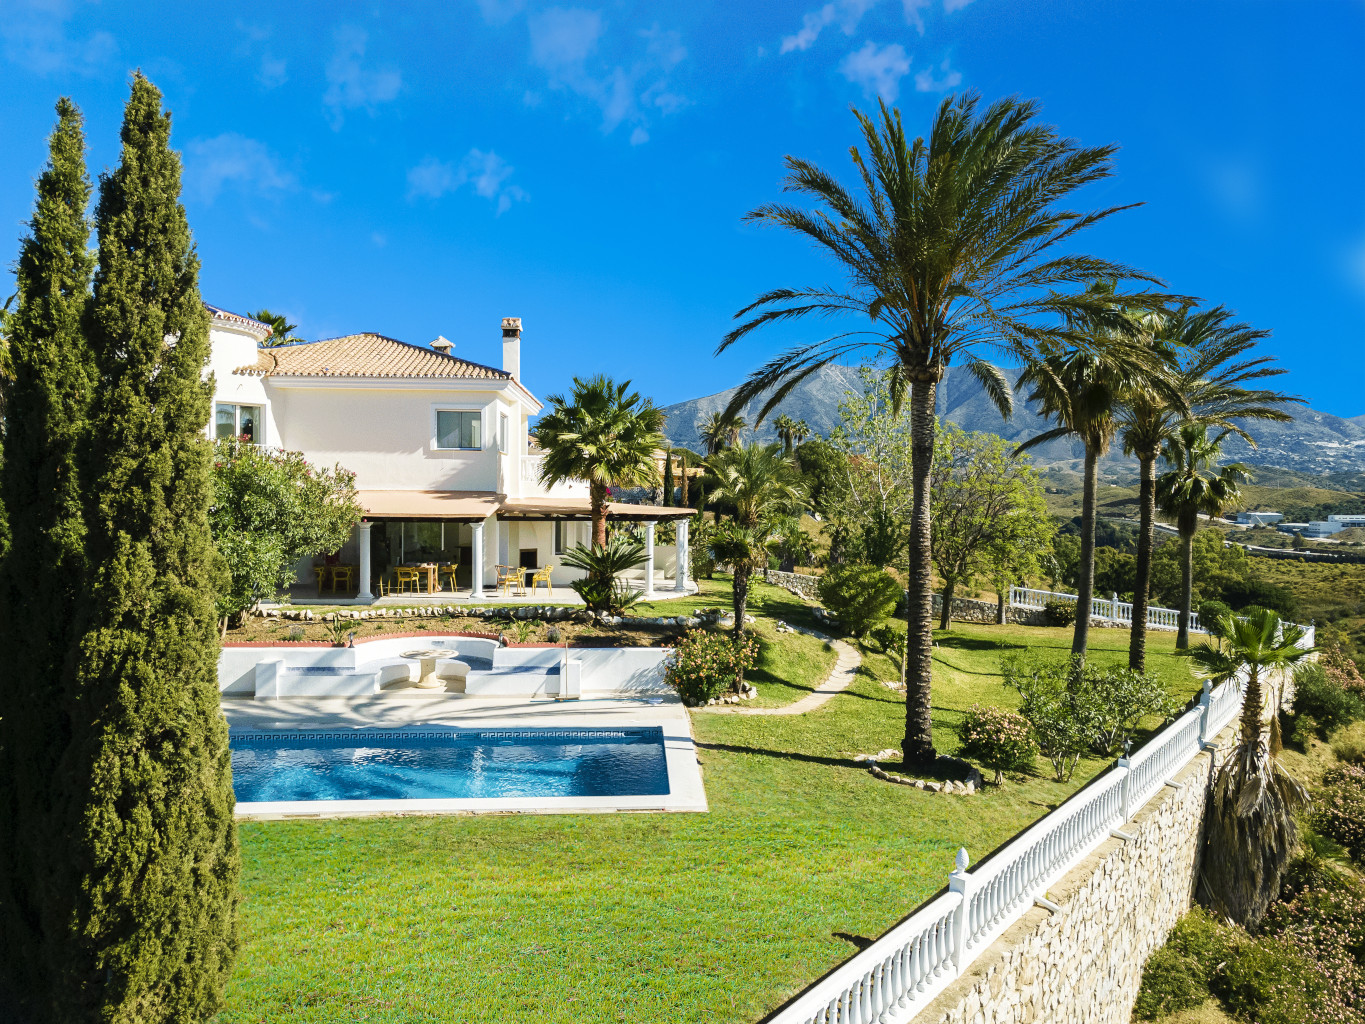 Weiße Villa mit Pool im Garten mit tropischen Pflanzen wie Palmen, sonniger Tag und blauer Himmel